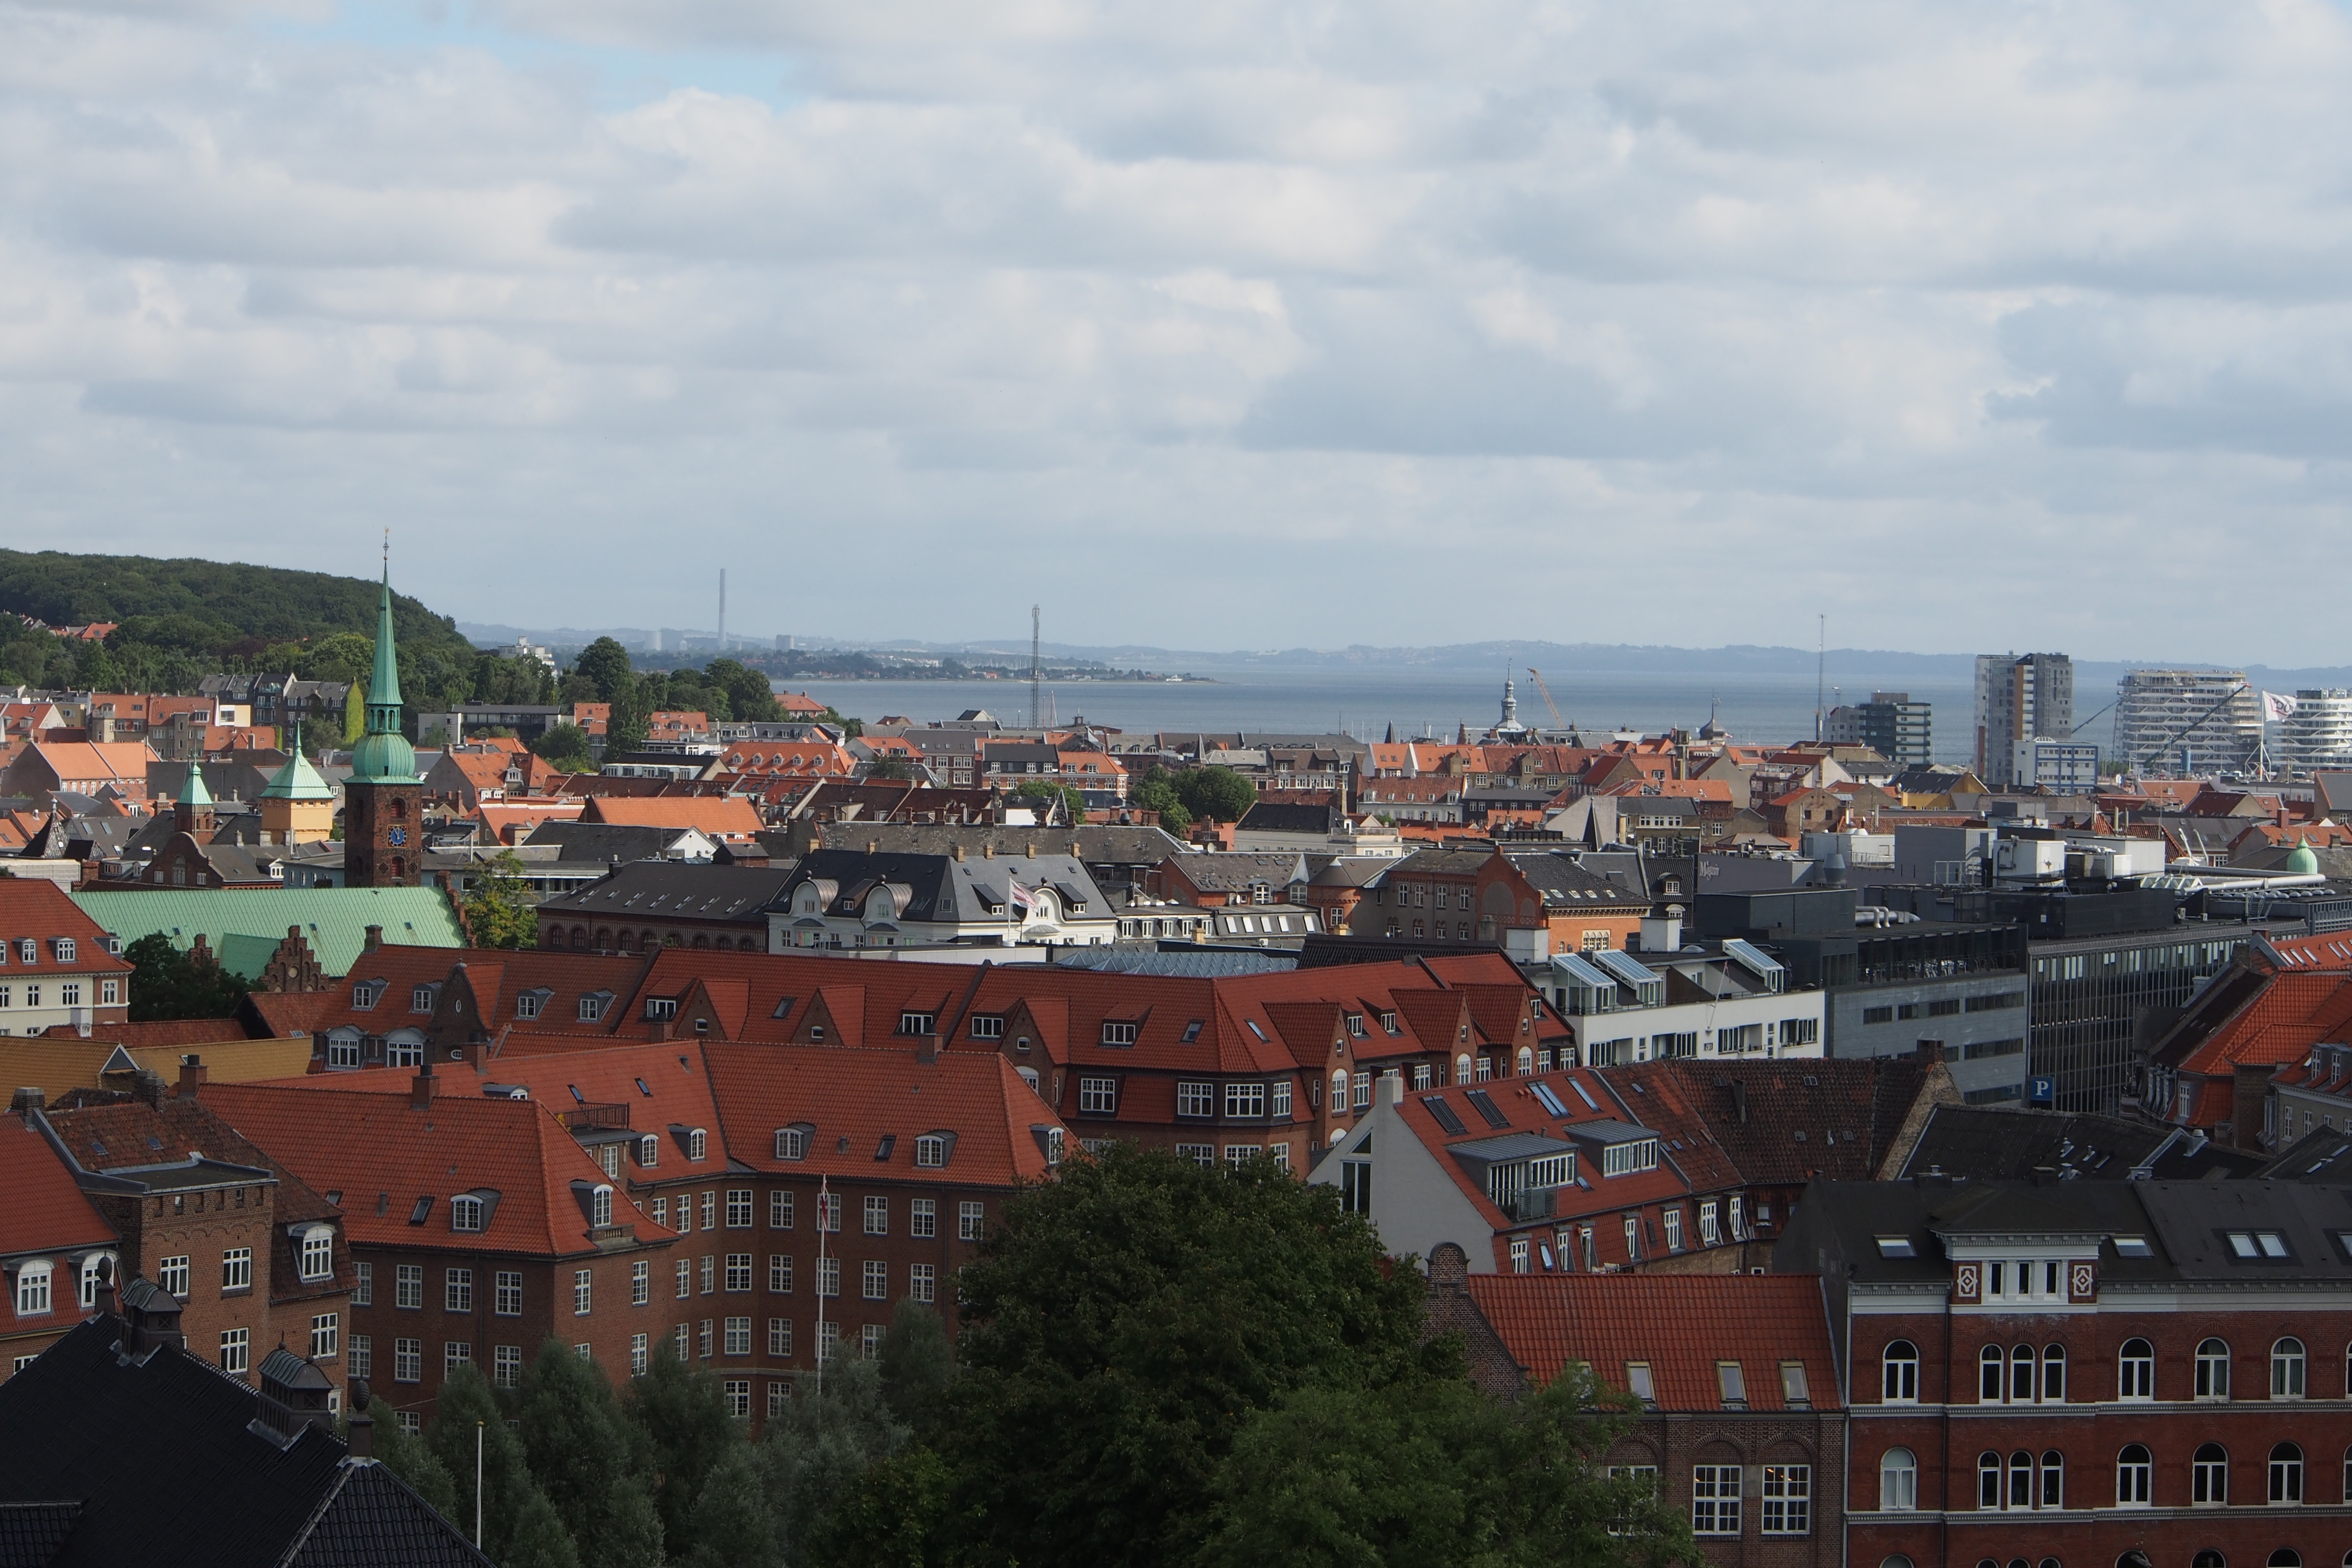 Aarhus aerial view